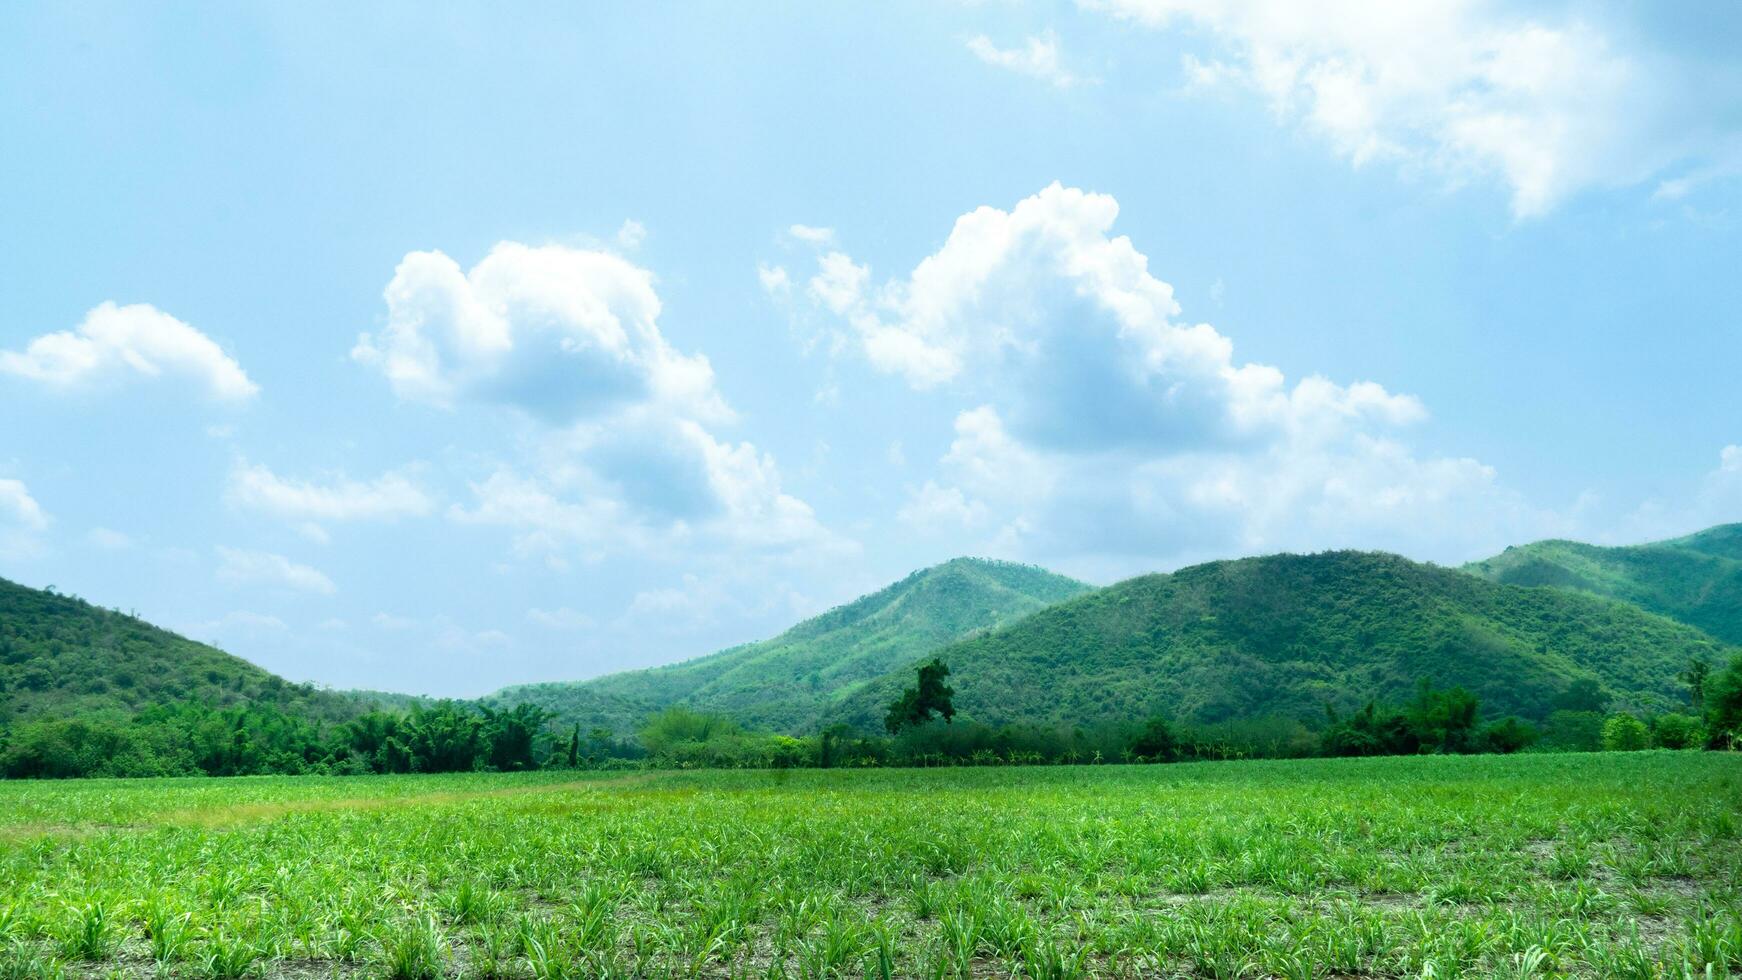 agricole zone de le sucre canne feuilles a été initialement planté. là sont vert les forêts et magnifique montagnes entrecoupé en dessous de le bleu ciel et blanc des nuages. photo